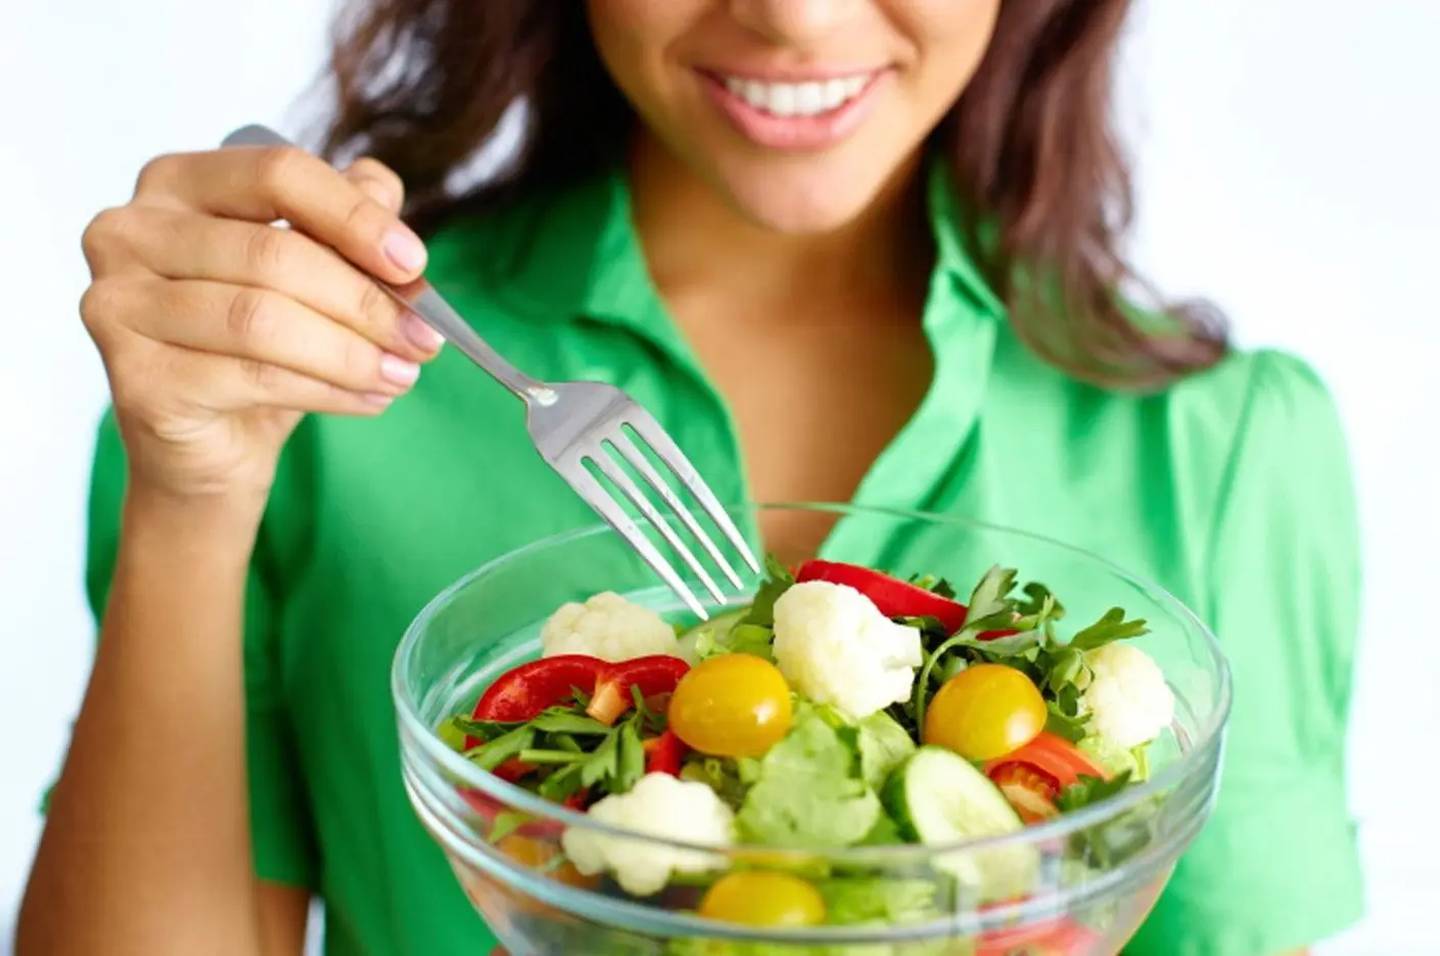 Comer verduras y frutas contribuye a reducir el riesgo de cáncer colorrectal.